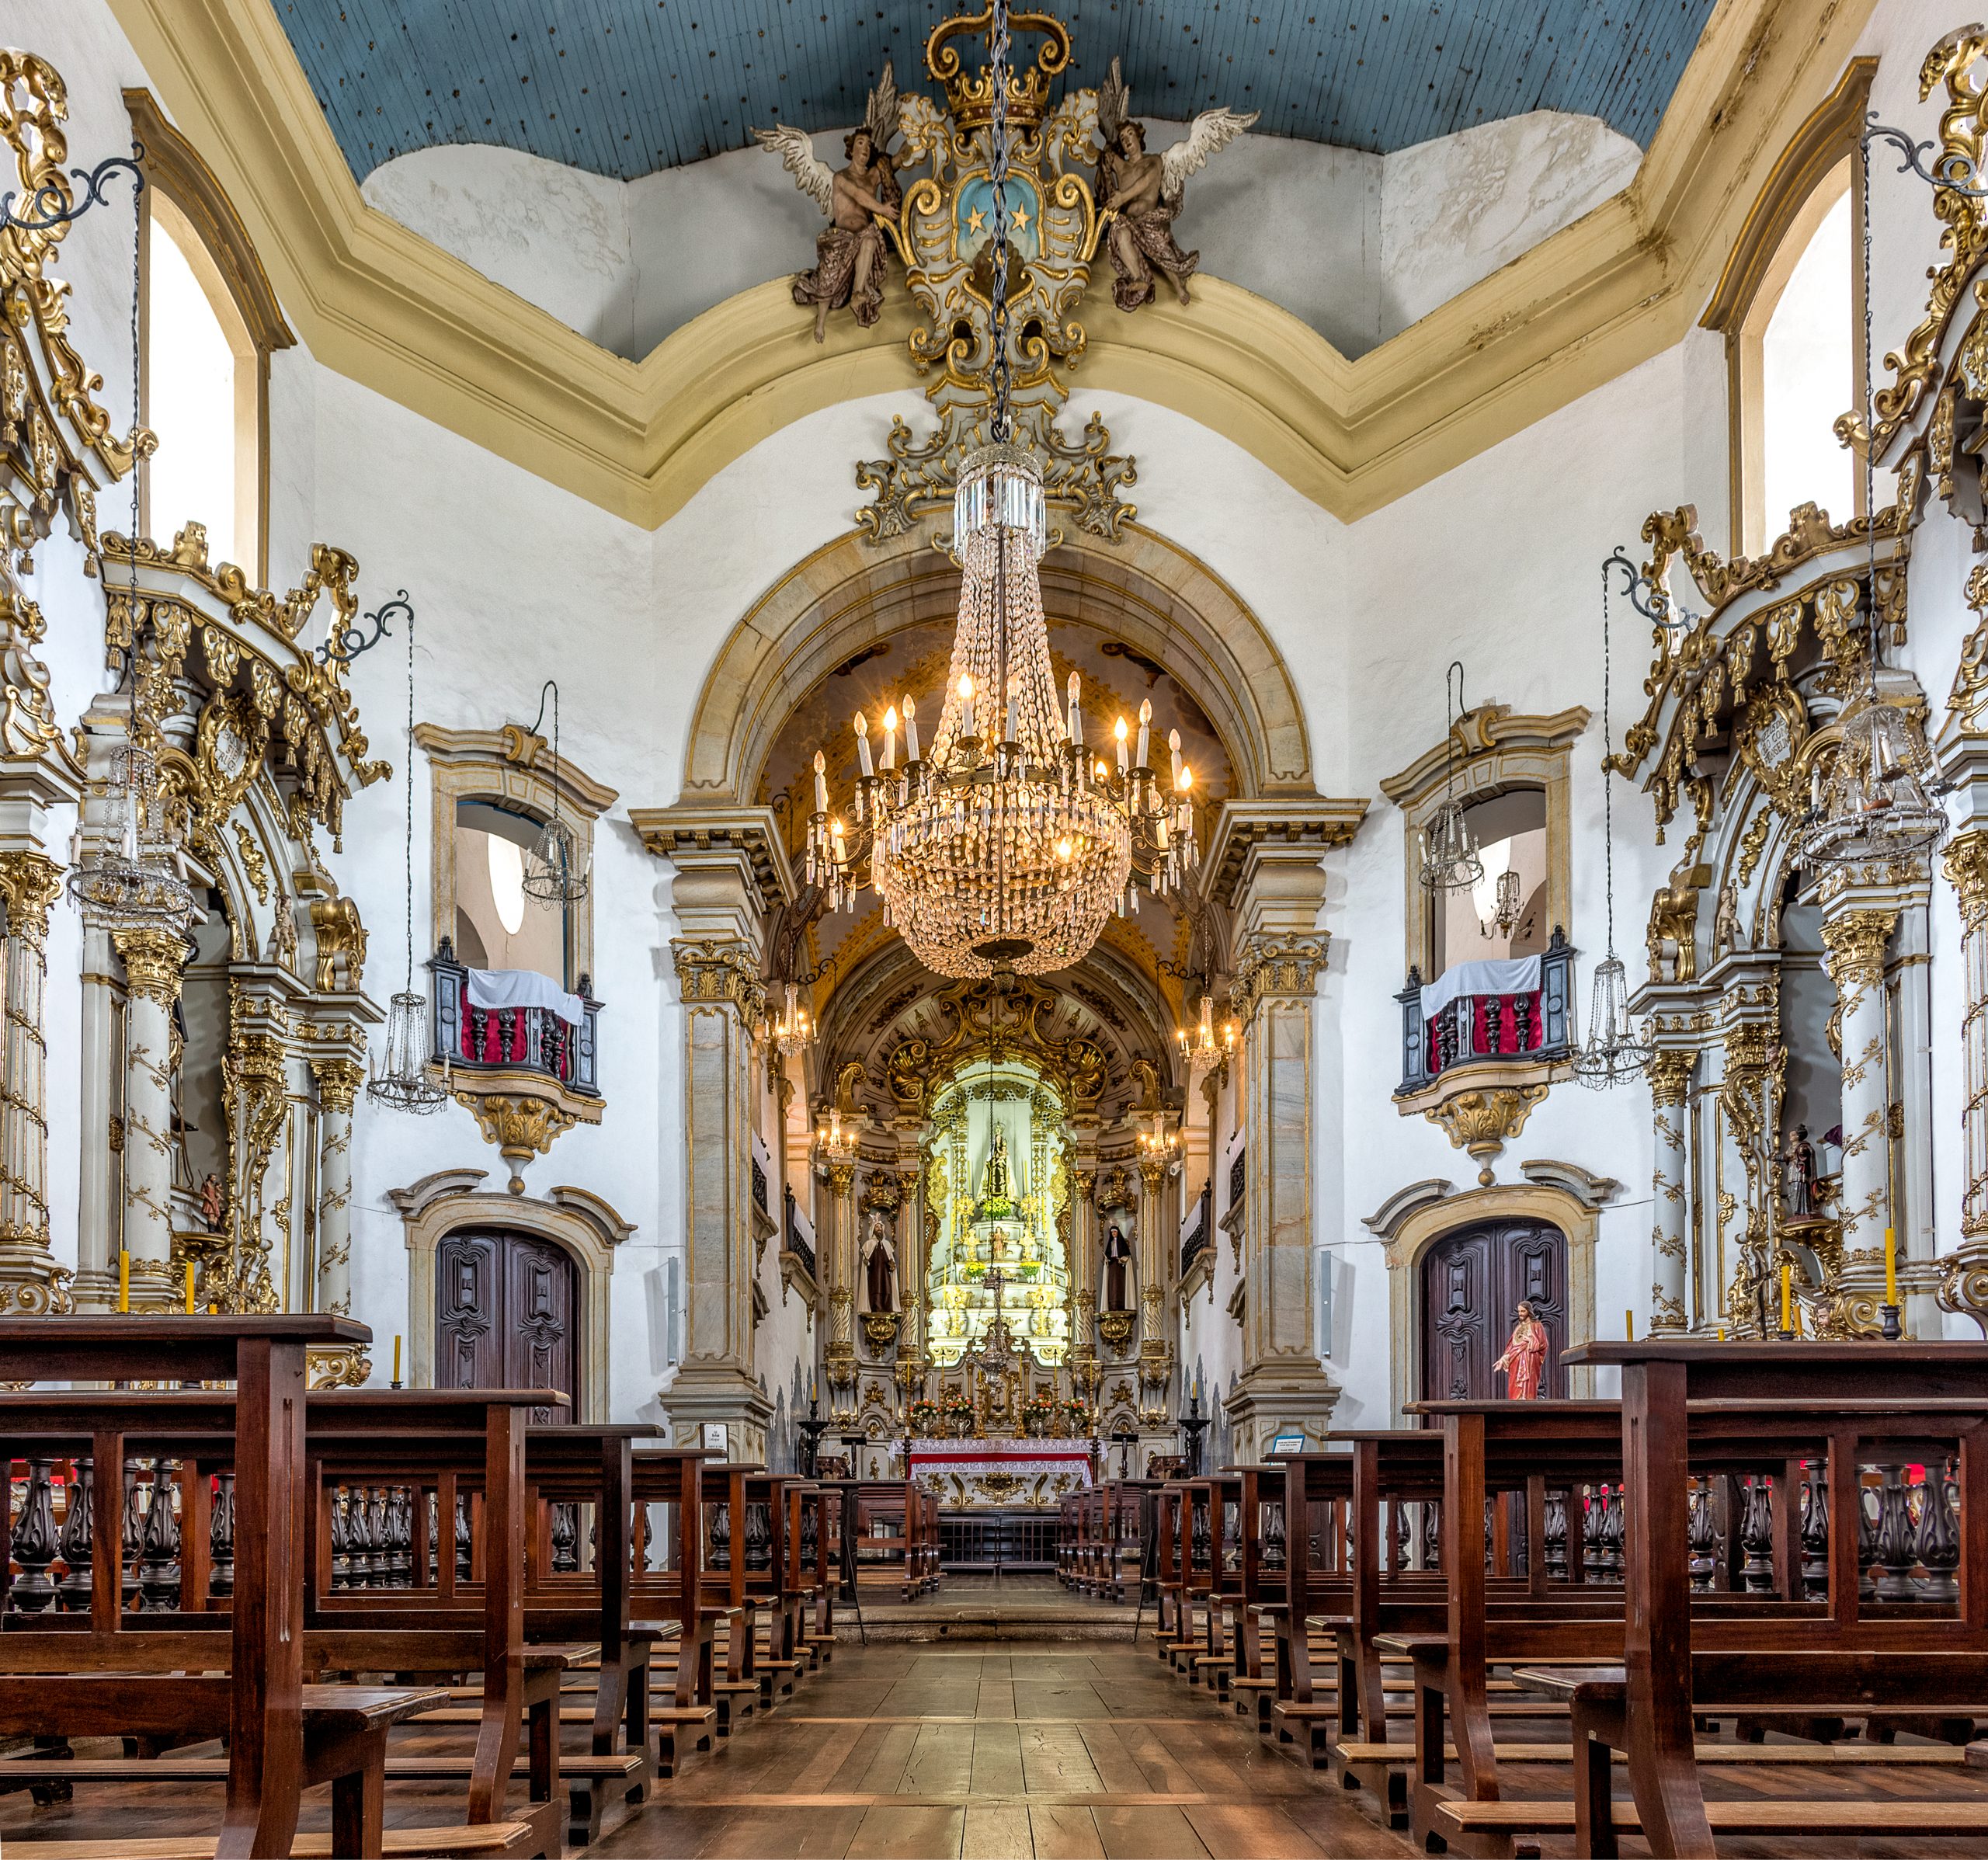 Igrejas históricas de Ouro Preto